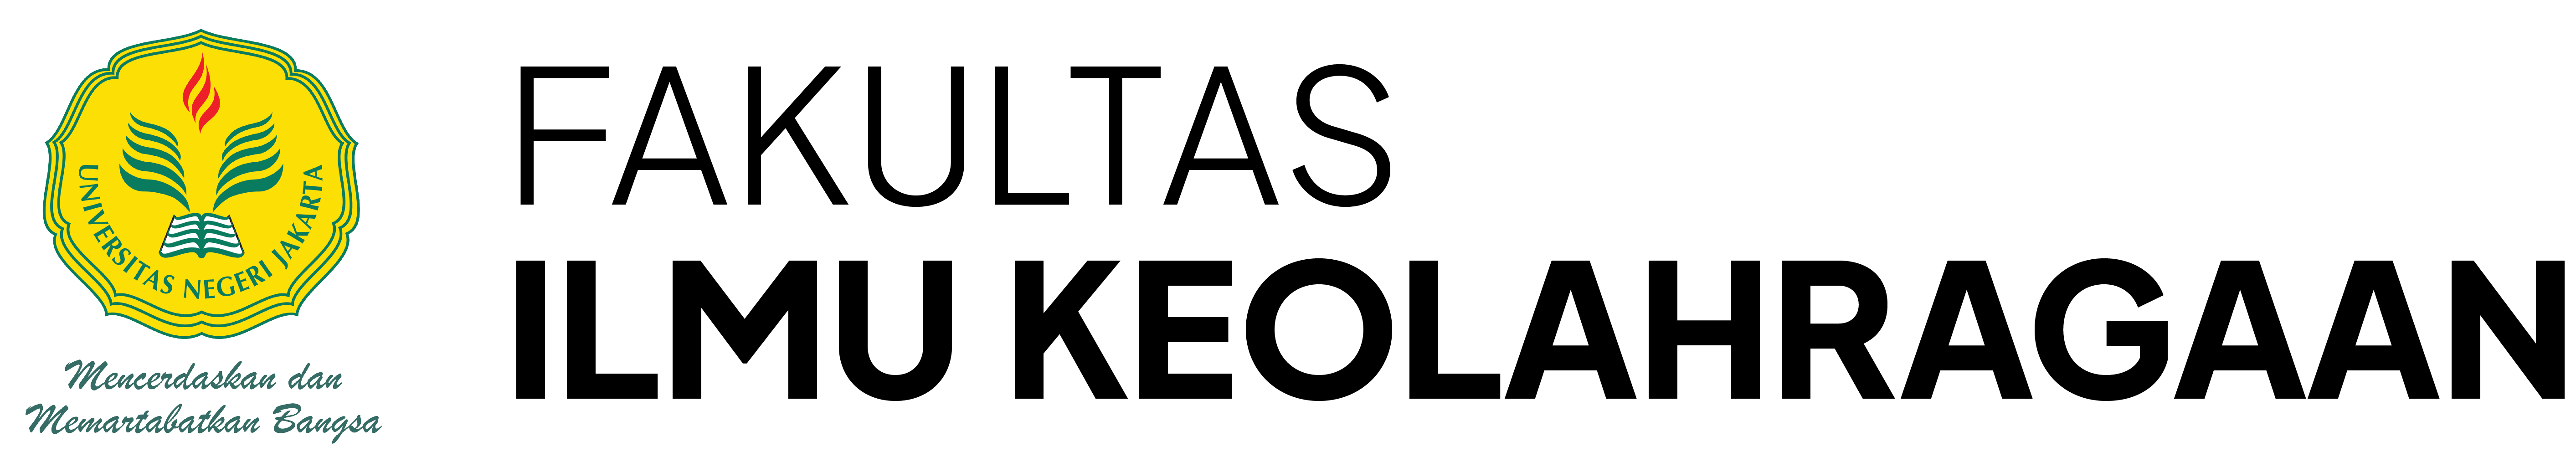 FIK Logo